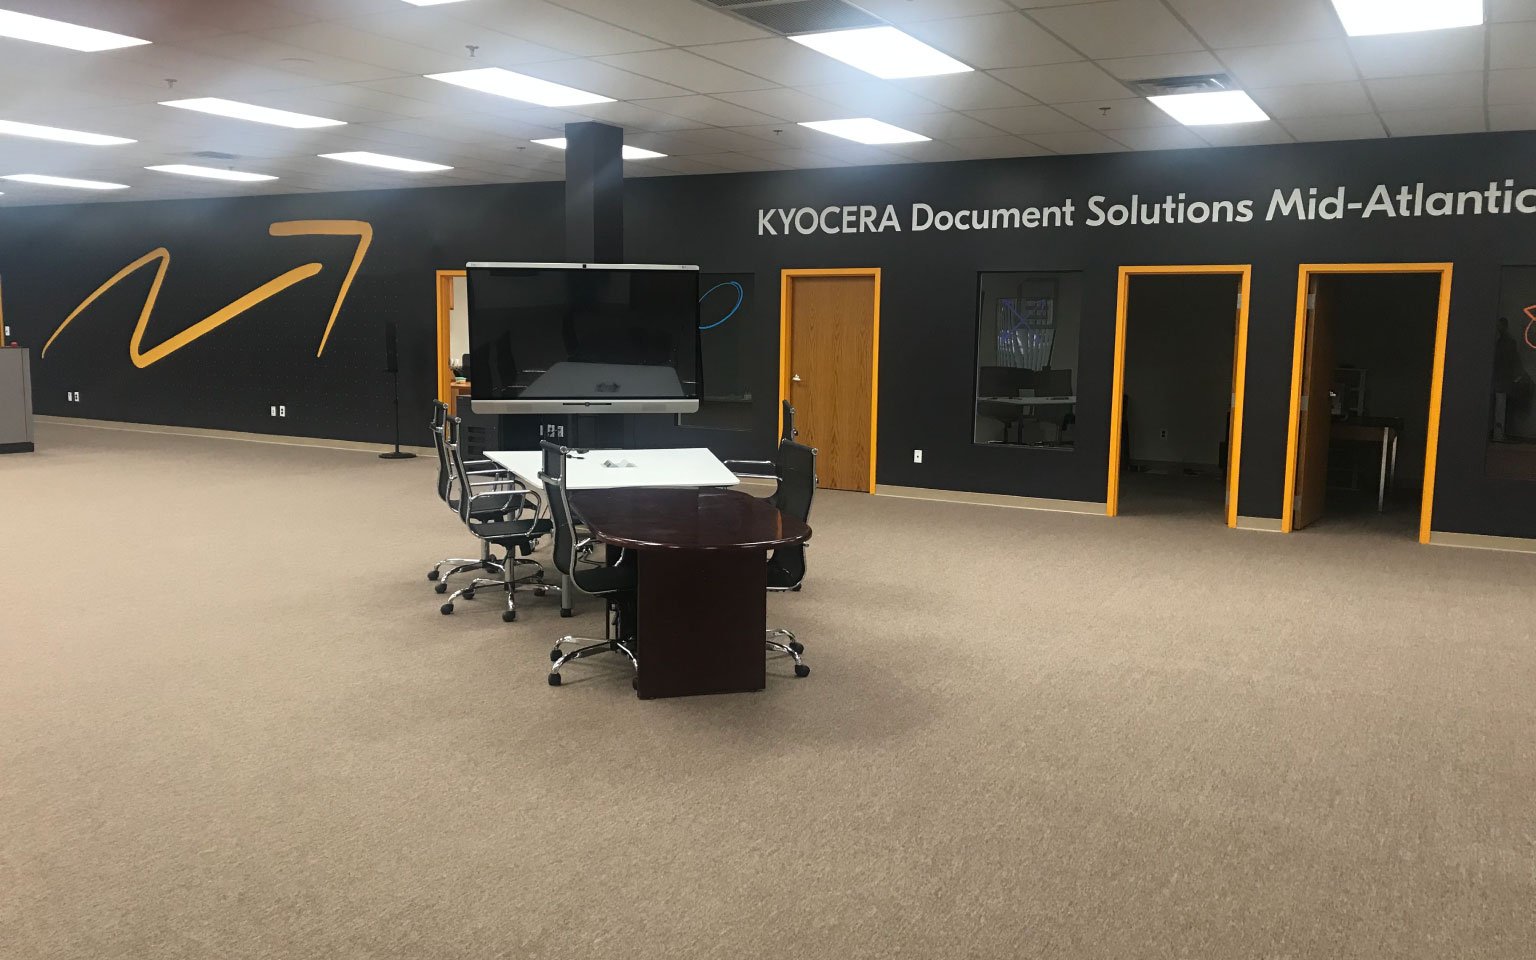 Kyocera Document Solutions Mid-Atlantic